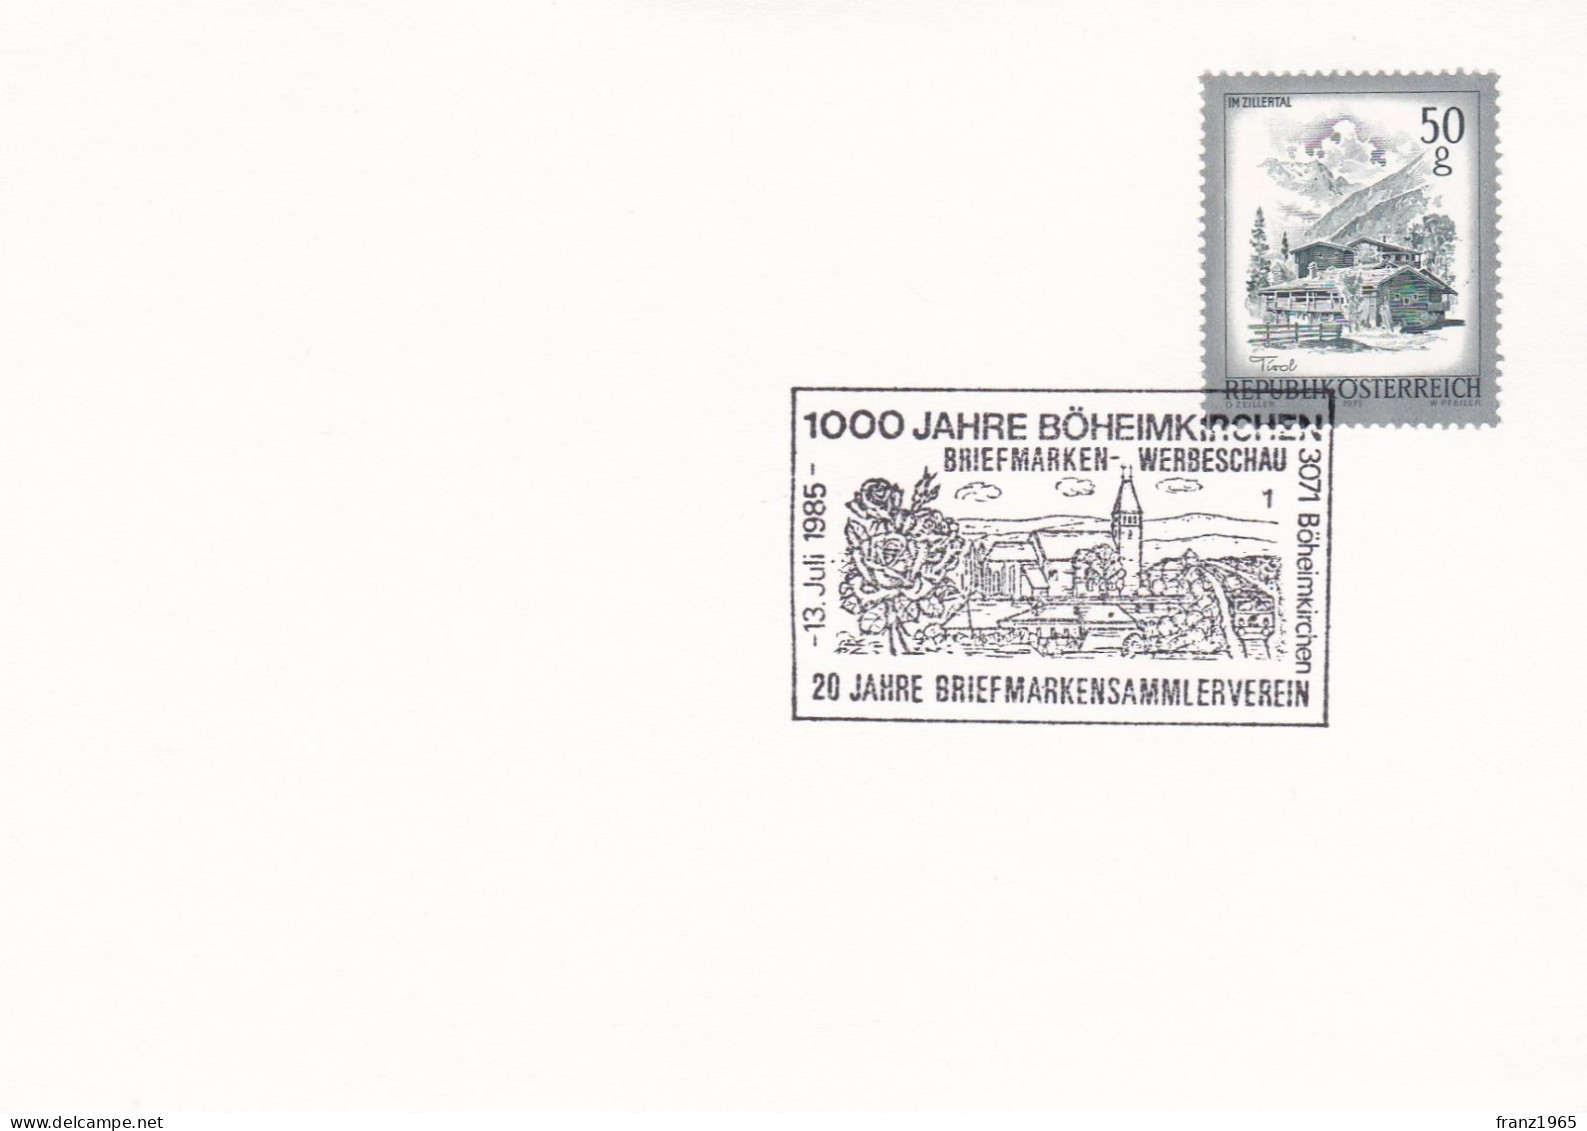 1000 Jahre Böheimkirchen - 1985 - Covers & Documents